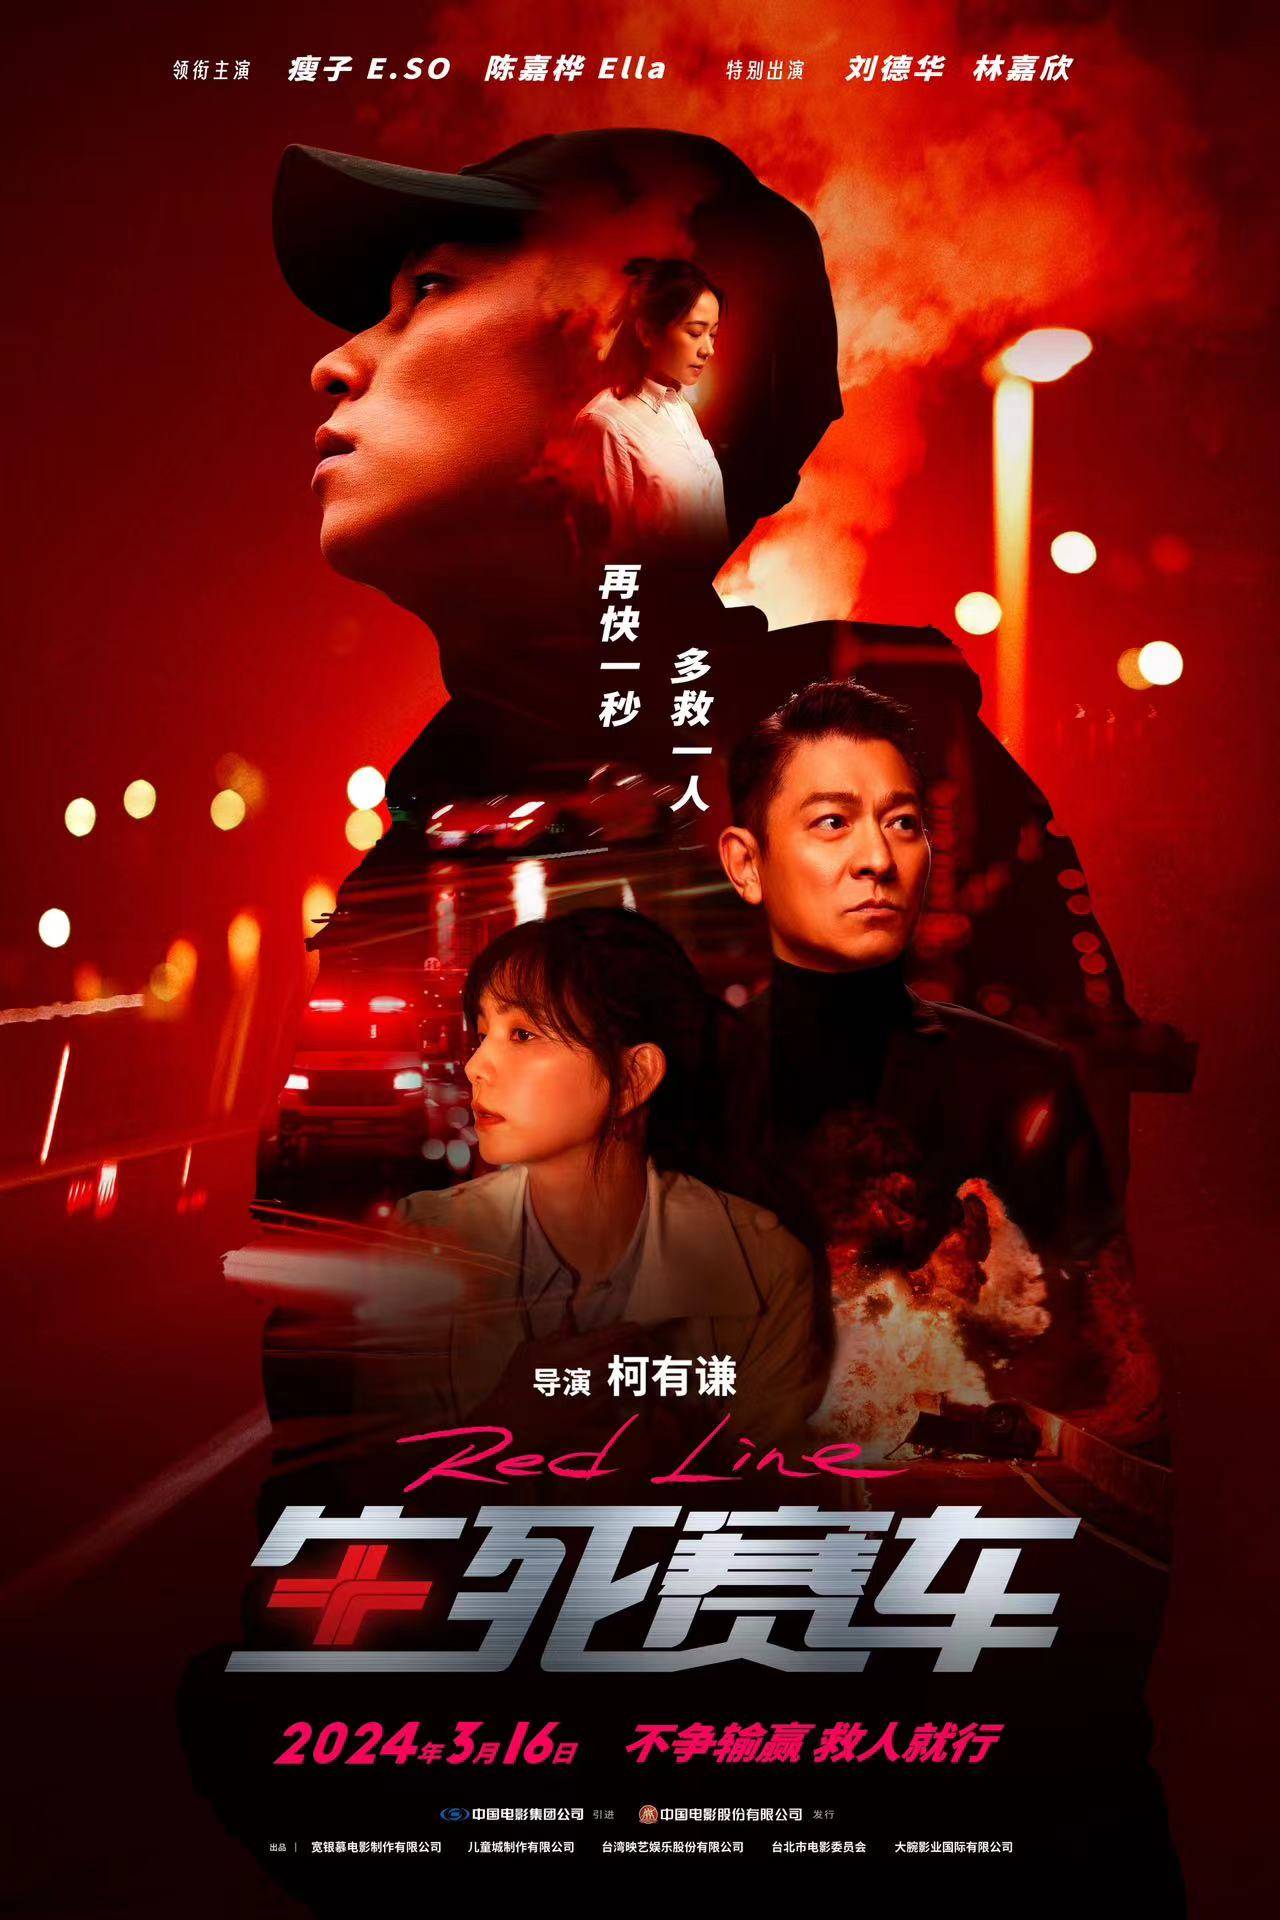 《生死赛车》曝定档海报及预告3月16日上映 刘德华时隔29年再演赛车手